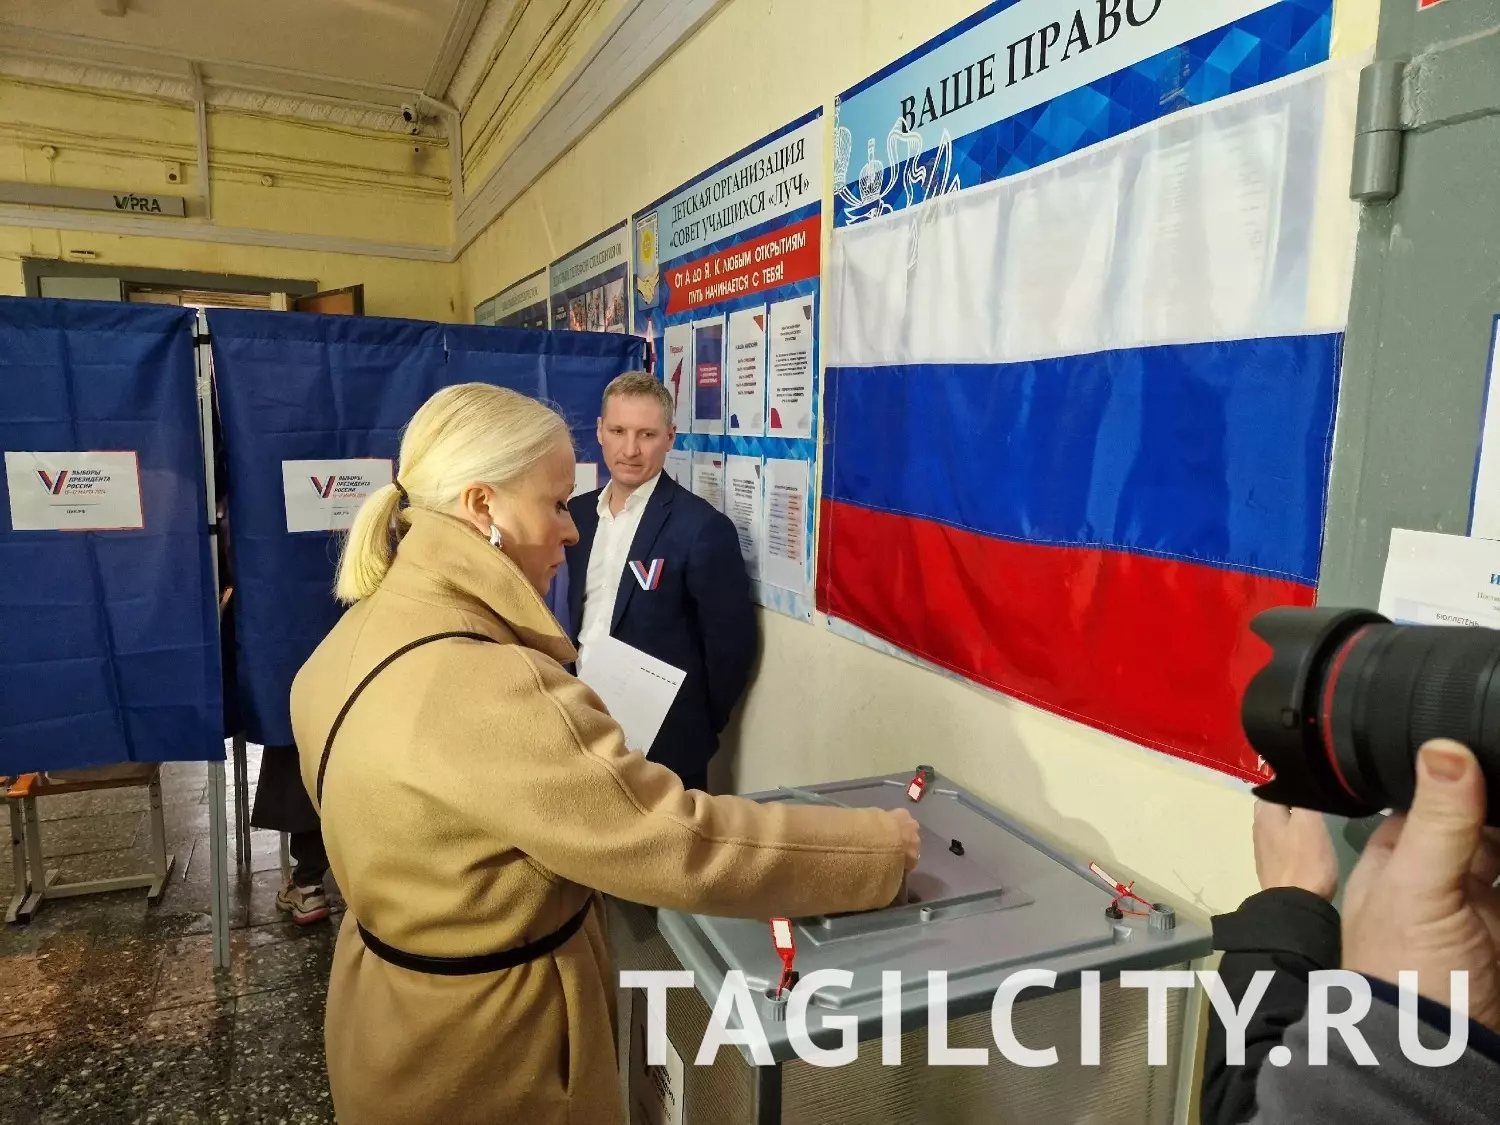 Глава города Нижний Тагил с супругой Еленой на выборах президента России.